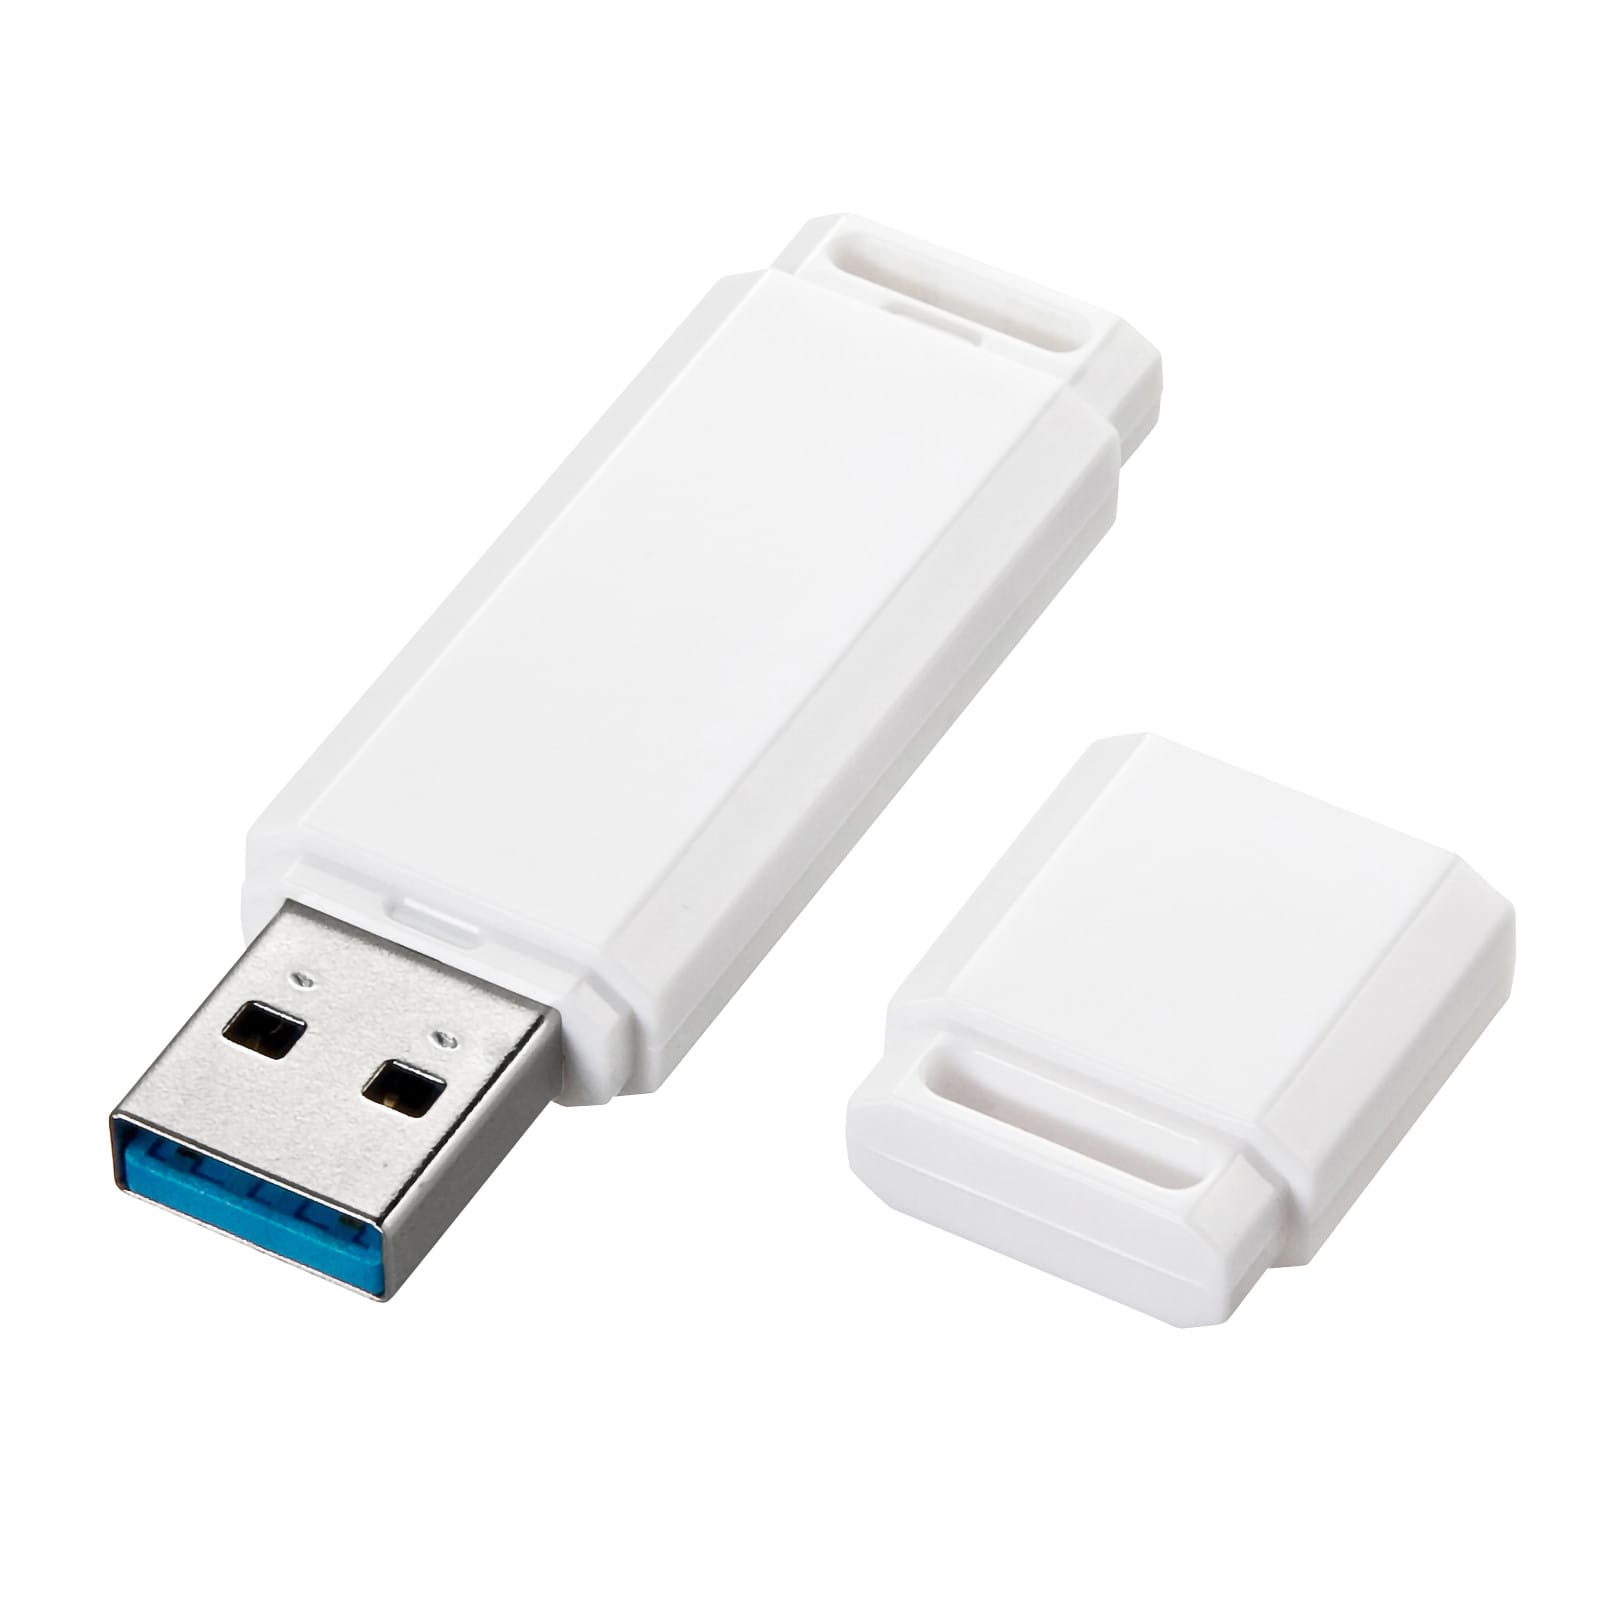 サンワサプライ、USB 3.2 Gen 1対応USBメモリを発売